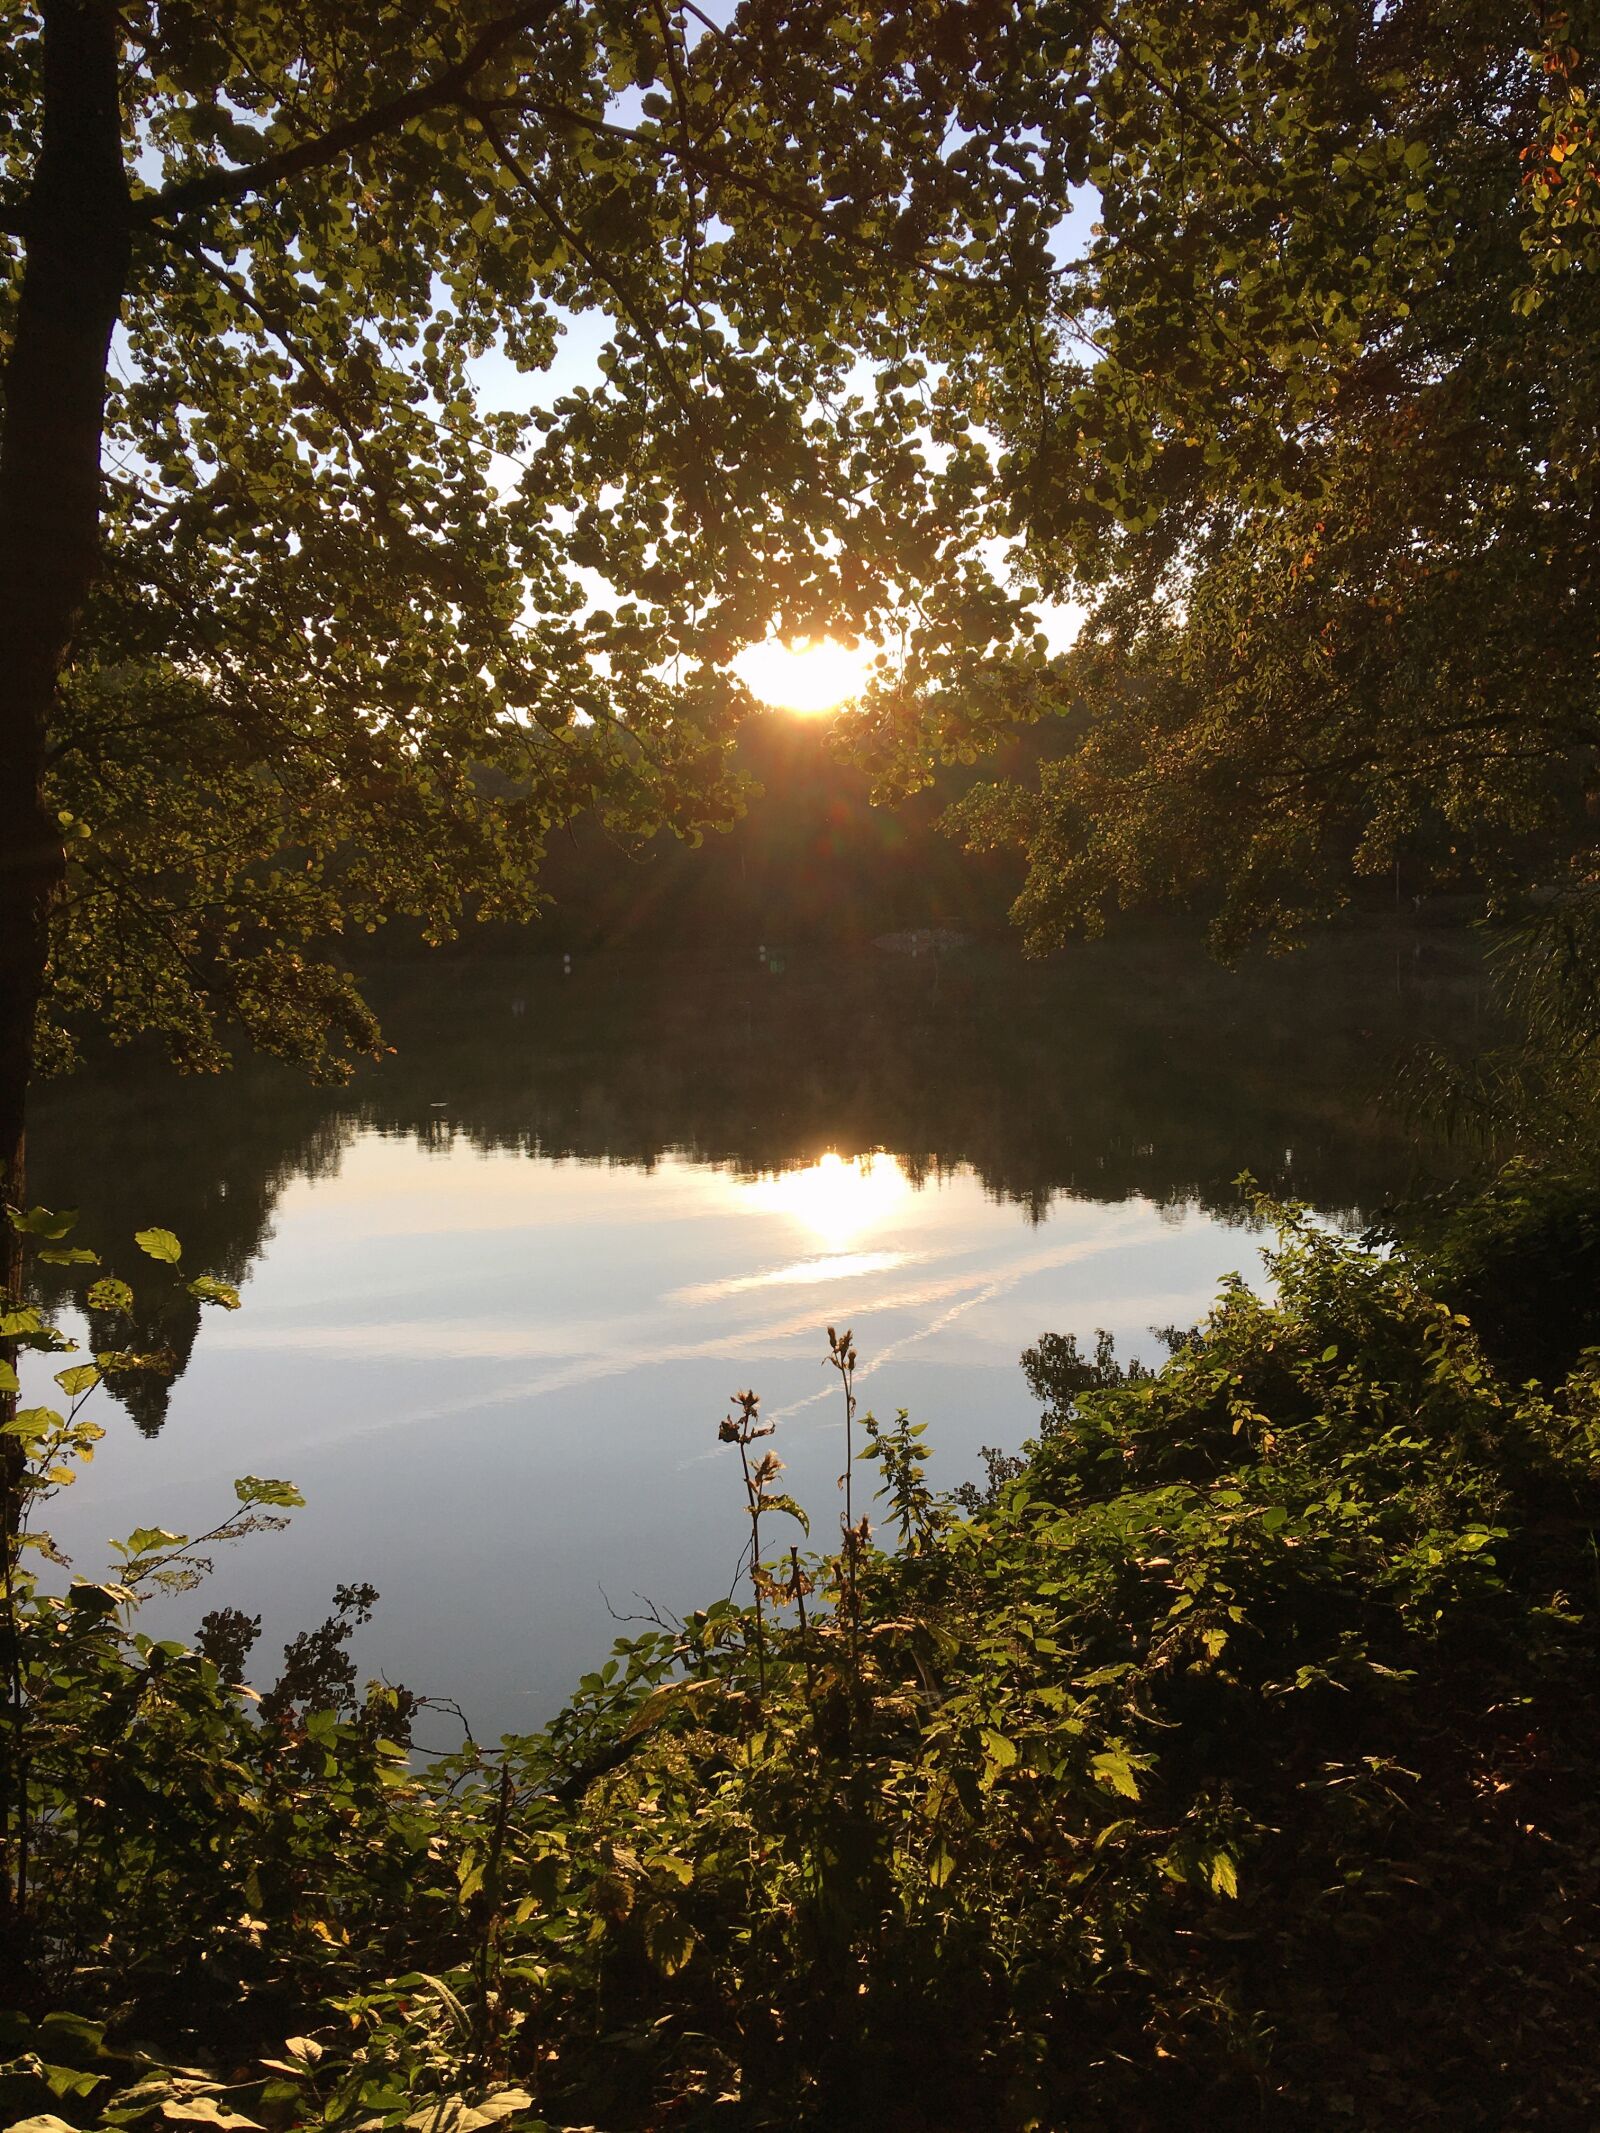 Apple iPhone SE (1st generation) sample photo. Lake, nature, sunset photography